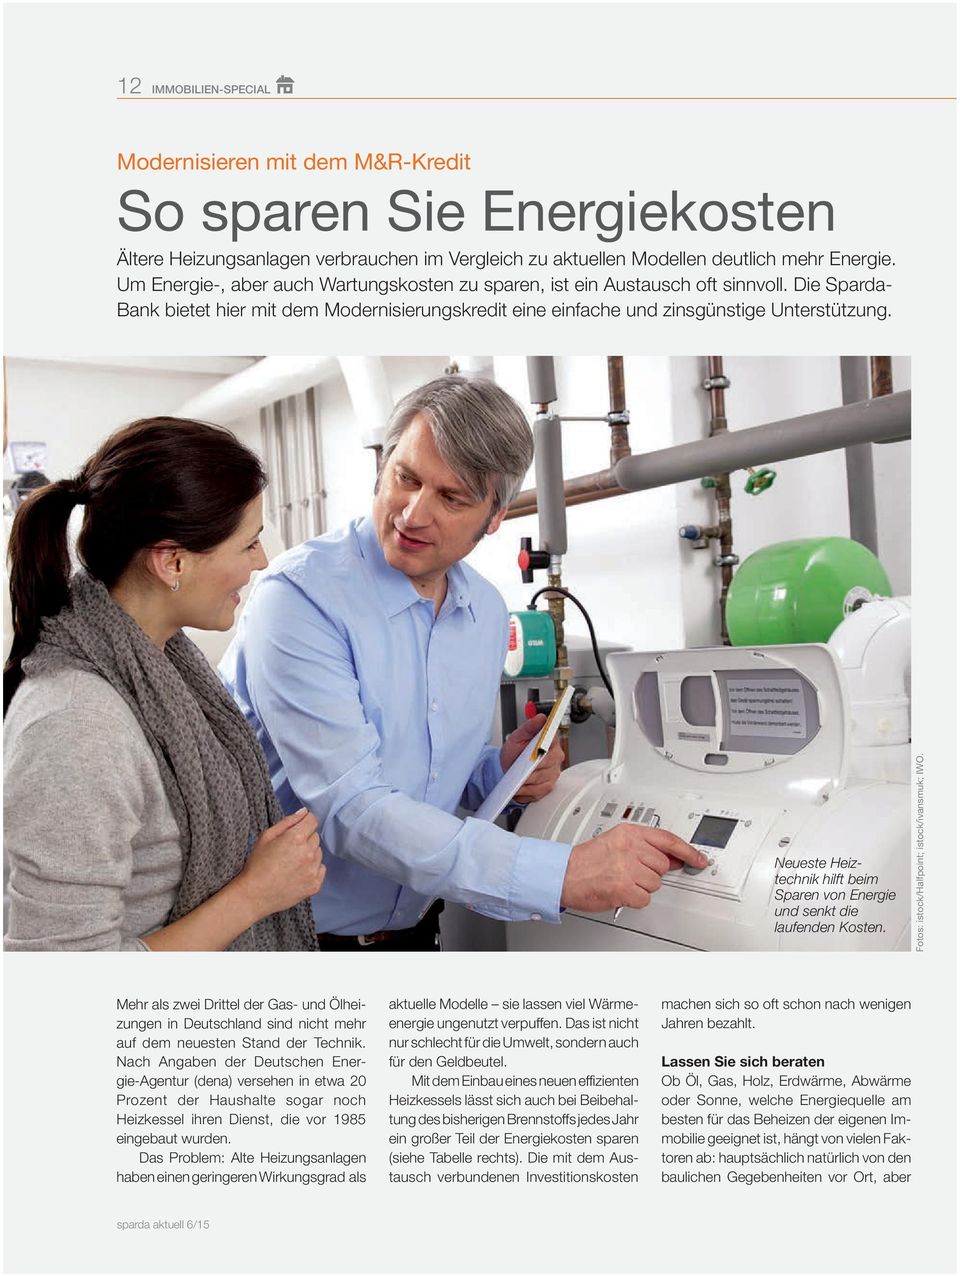 Neueste Heiztechnik hilft beim Sparen von Energie und senkt die laufenden Kosten. Fotos: istock/halfpoint; istock/ivansmuk; IWO.